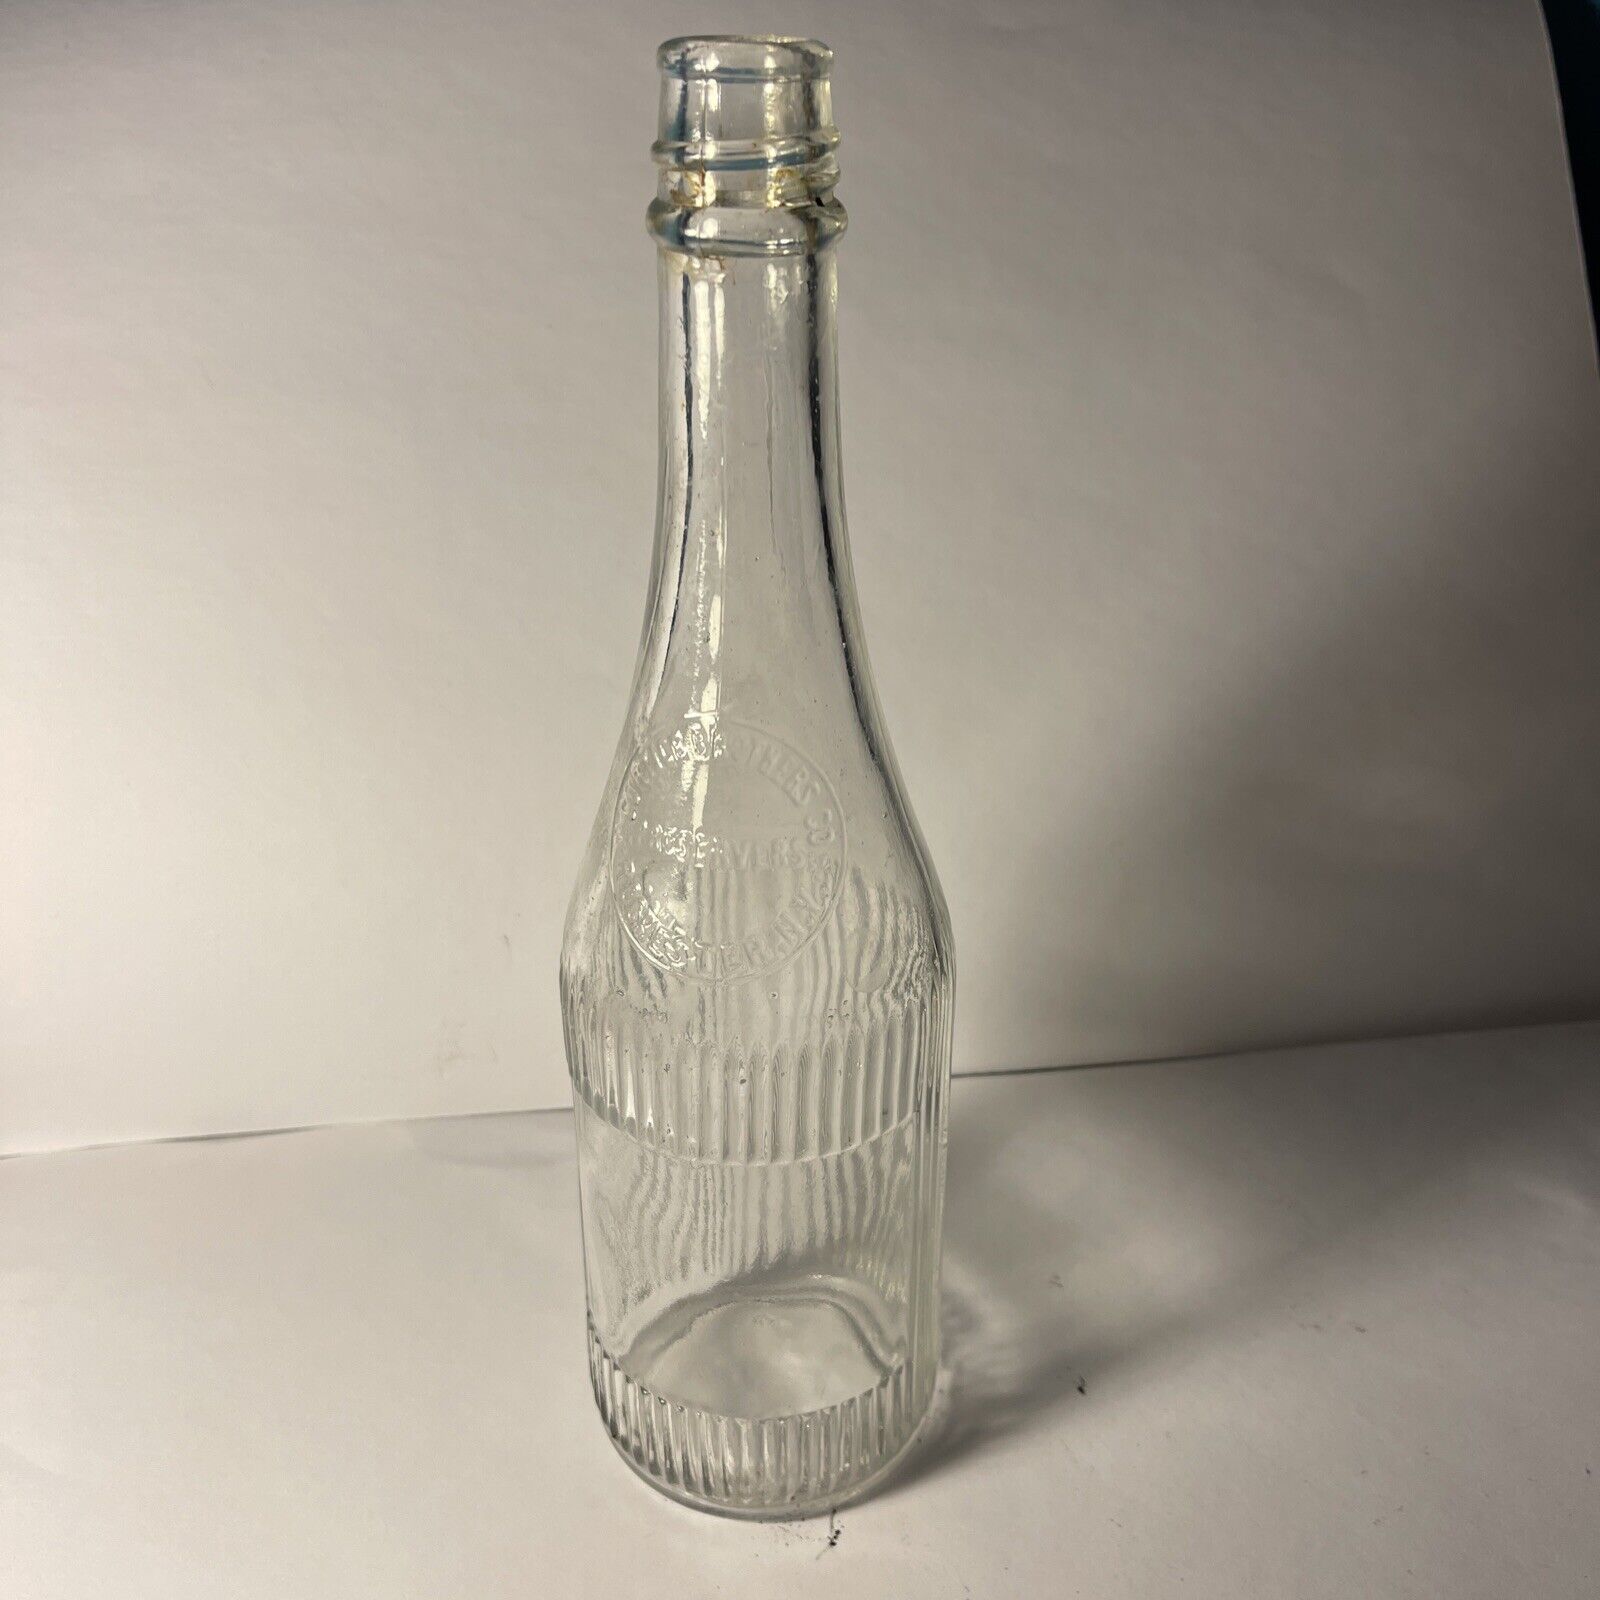 Antique Glass Bottle - New York